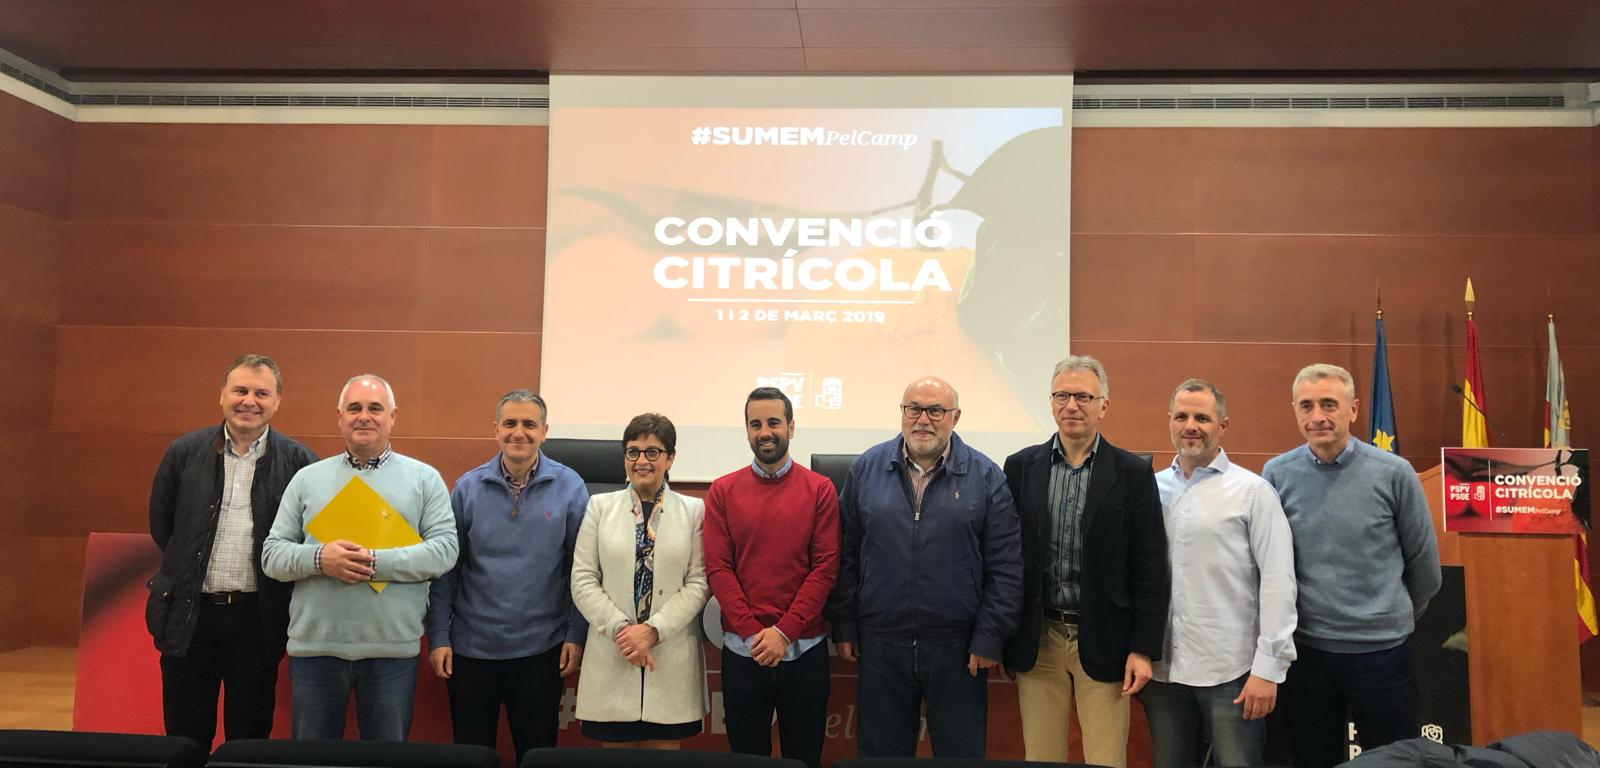 You are currently viewing El PSPV-PSOE reuneix a tots els representants del sector citrícola en unes jornades que marcaran l’estratègia per a l’eixida de la crisi